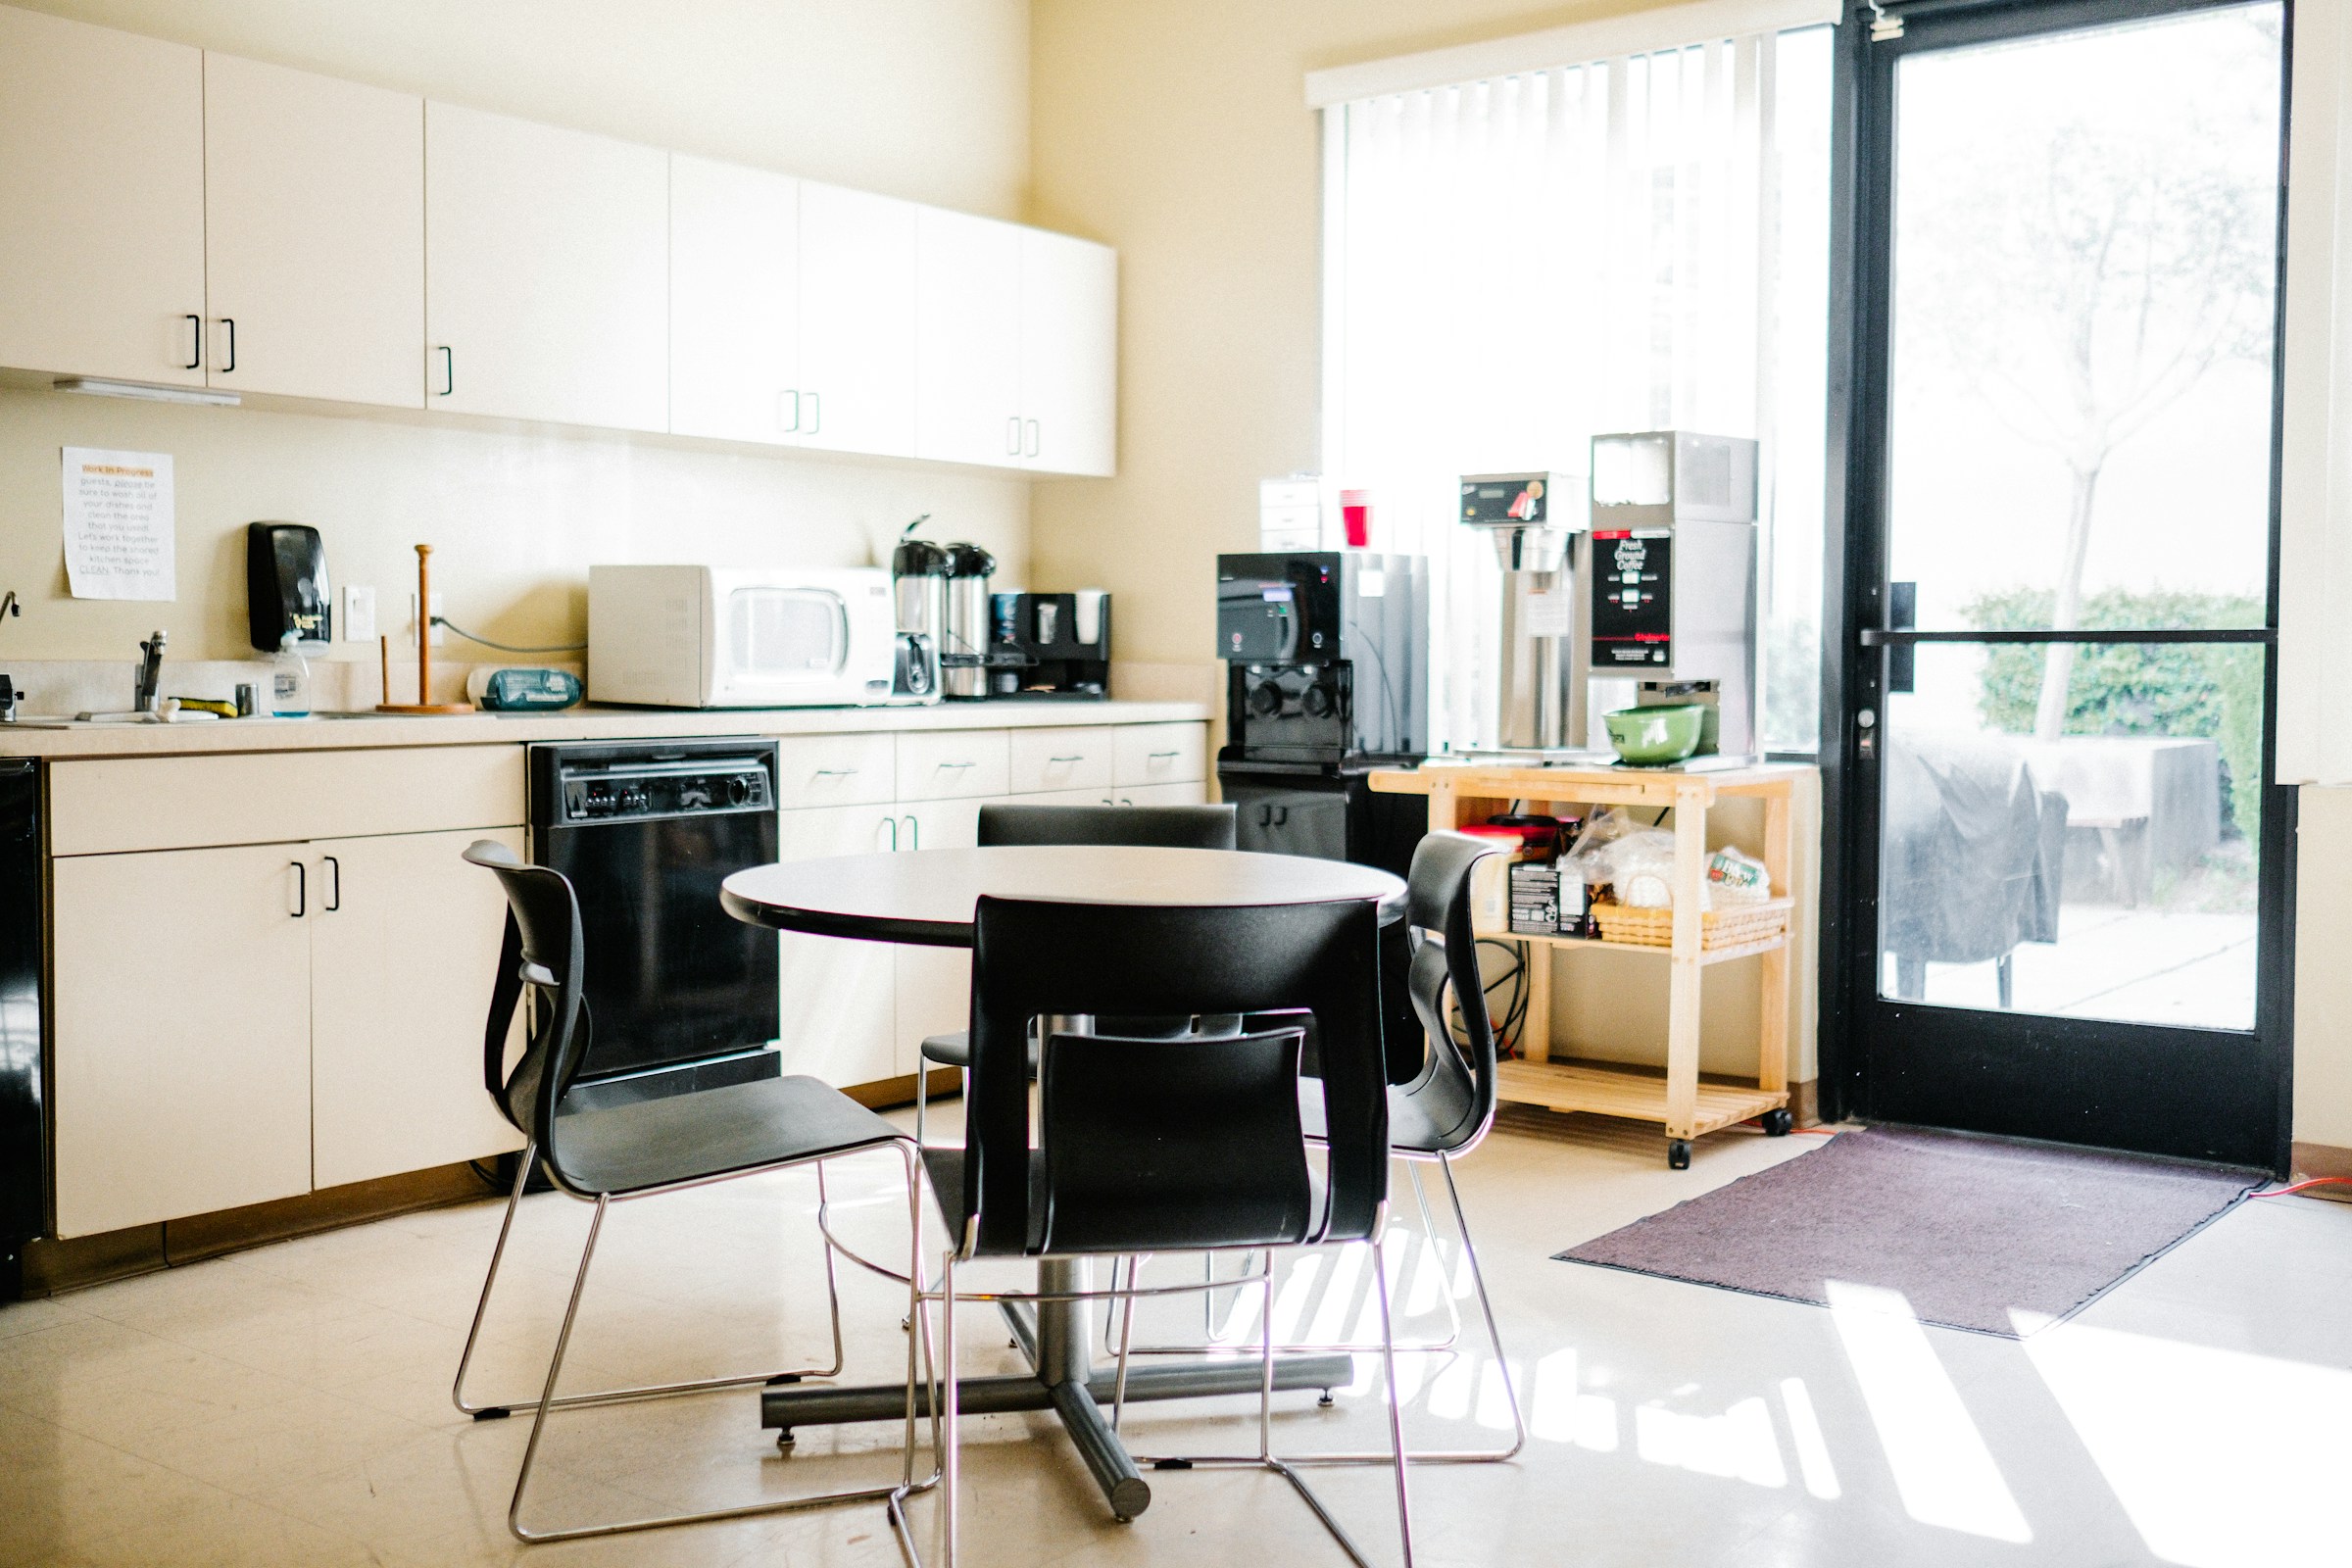 An office kitchen | Source: Unsplash